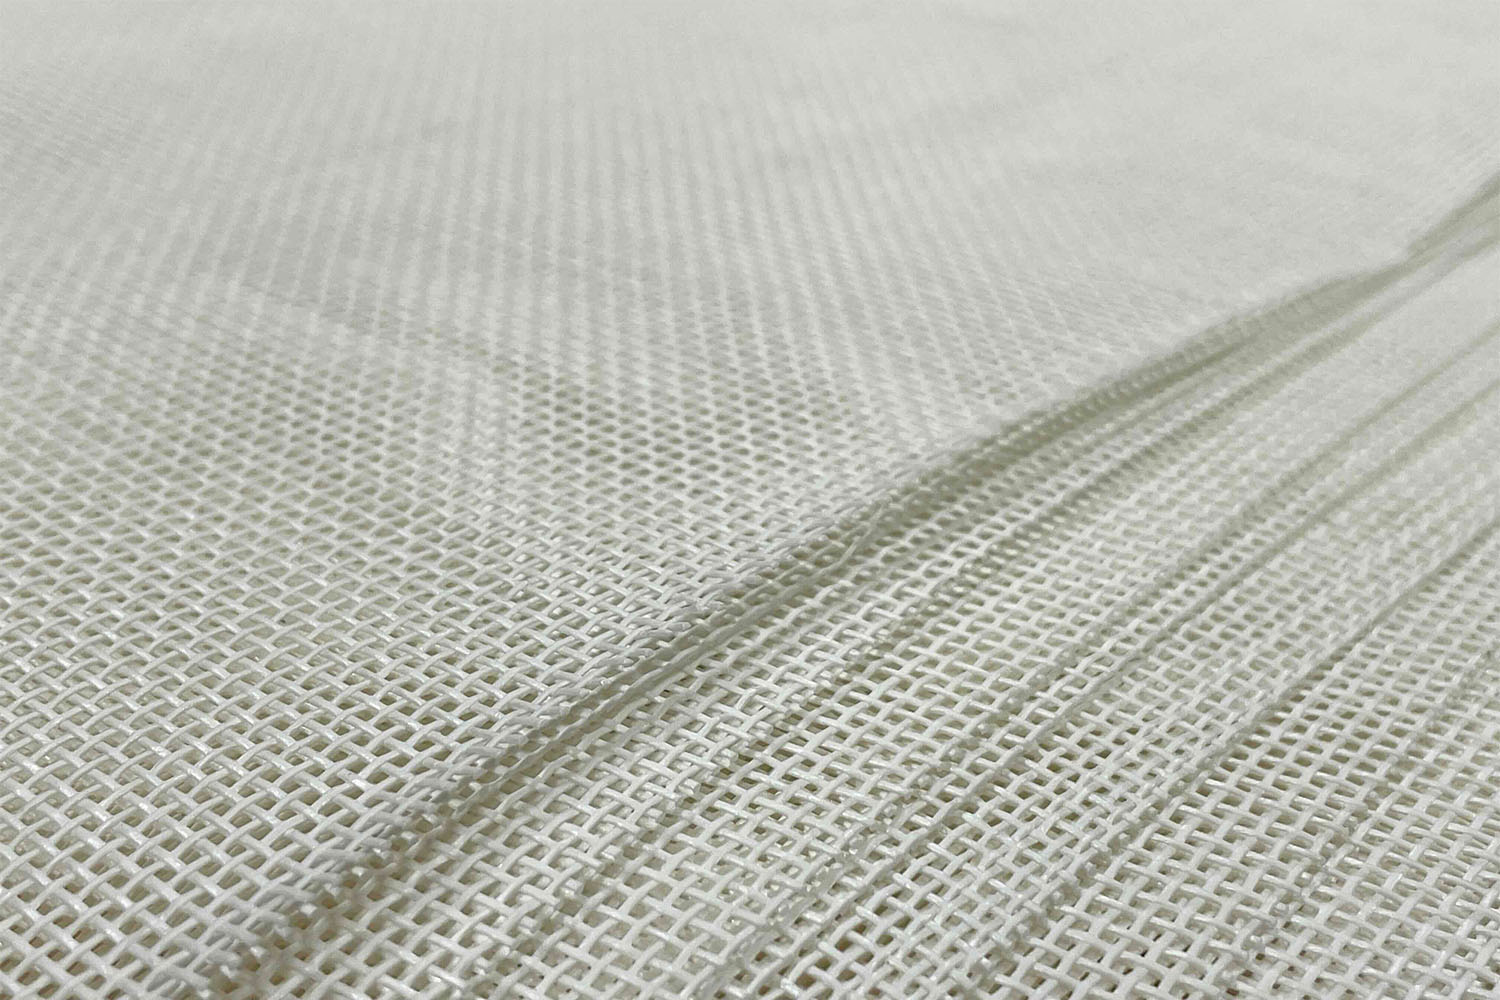 紙端材の配合した再生紙から作られた糸で織られた布のアップ